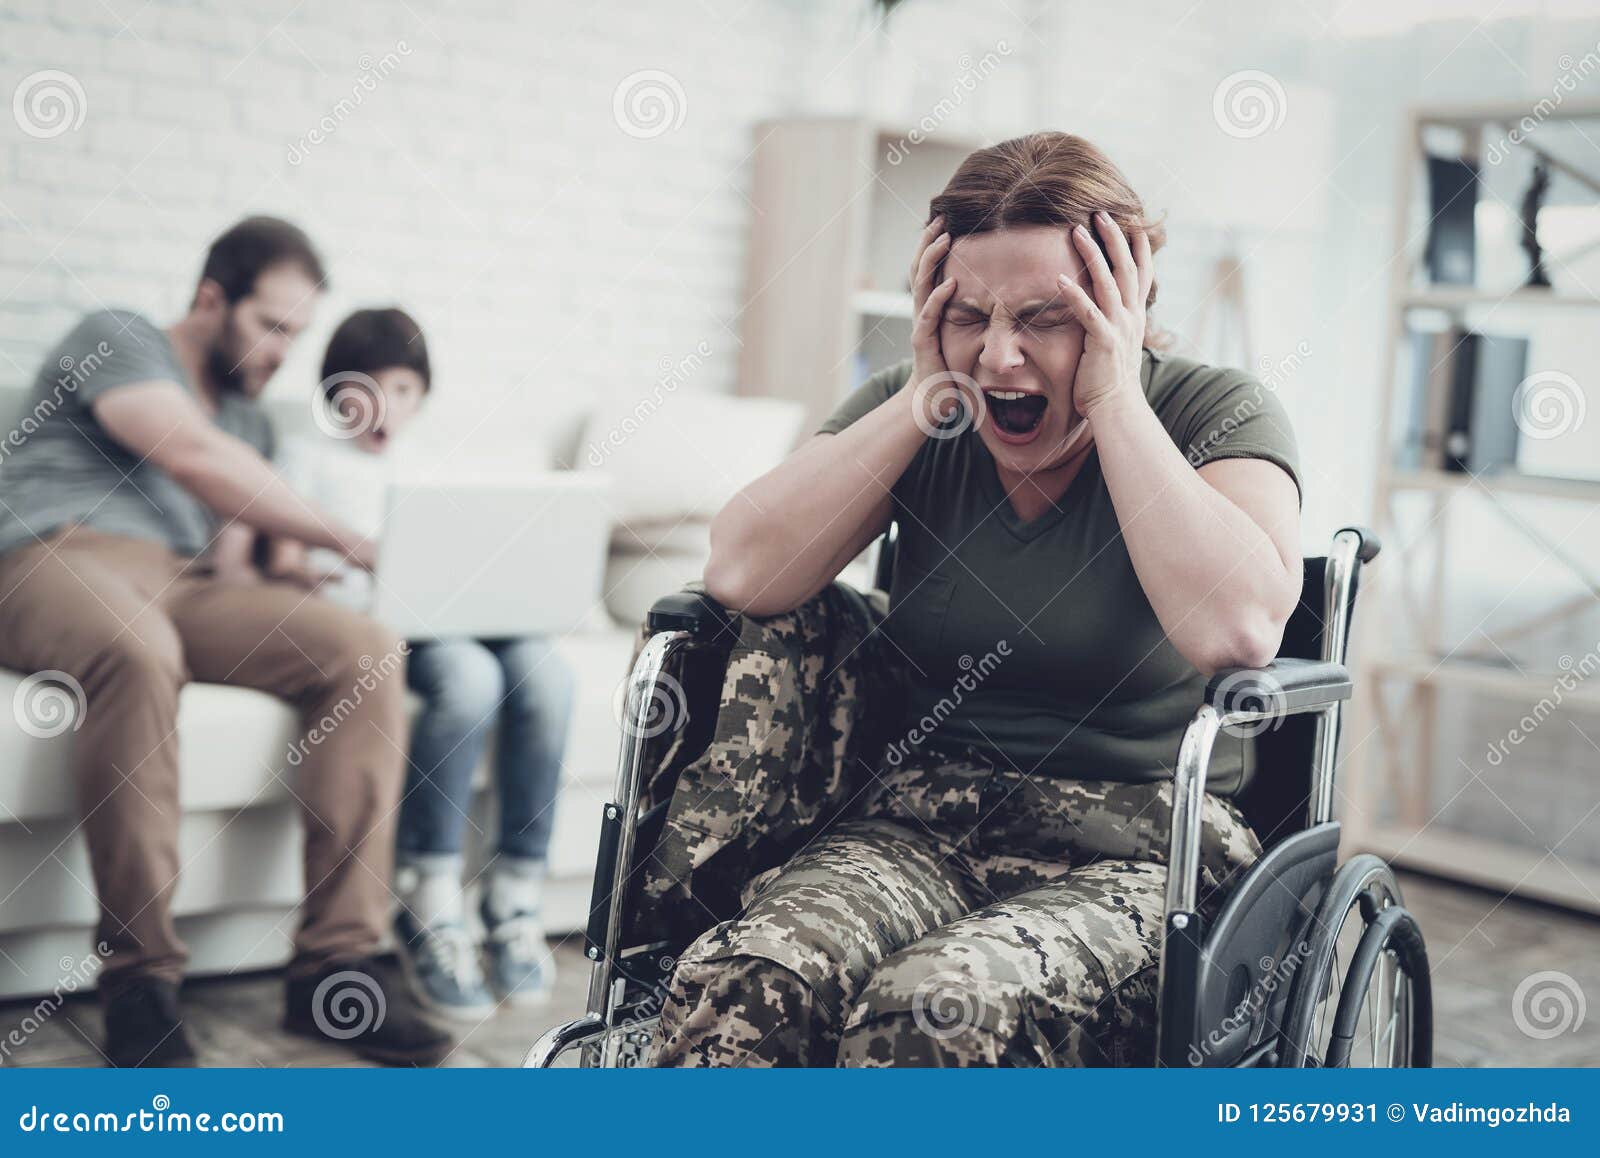 Инвалид войны 1 группы. Солдат на инвалидной коляске. Инвалидное кресло военные. Военнослужащие инвалиды.